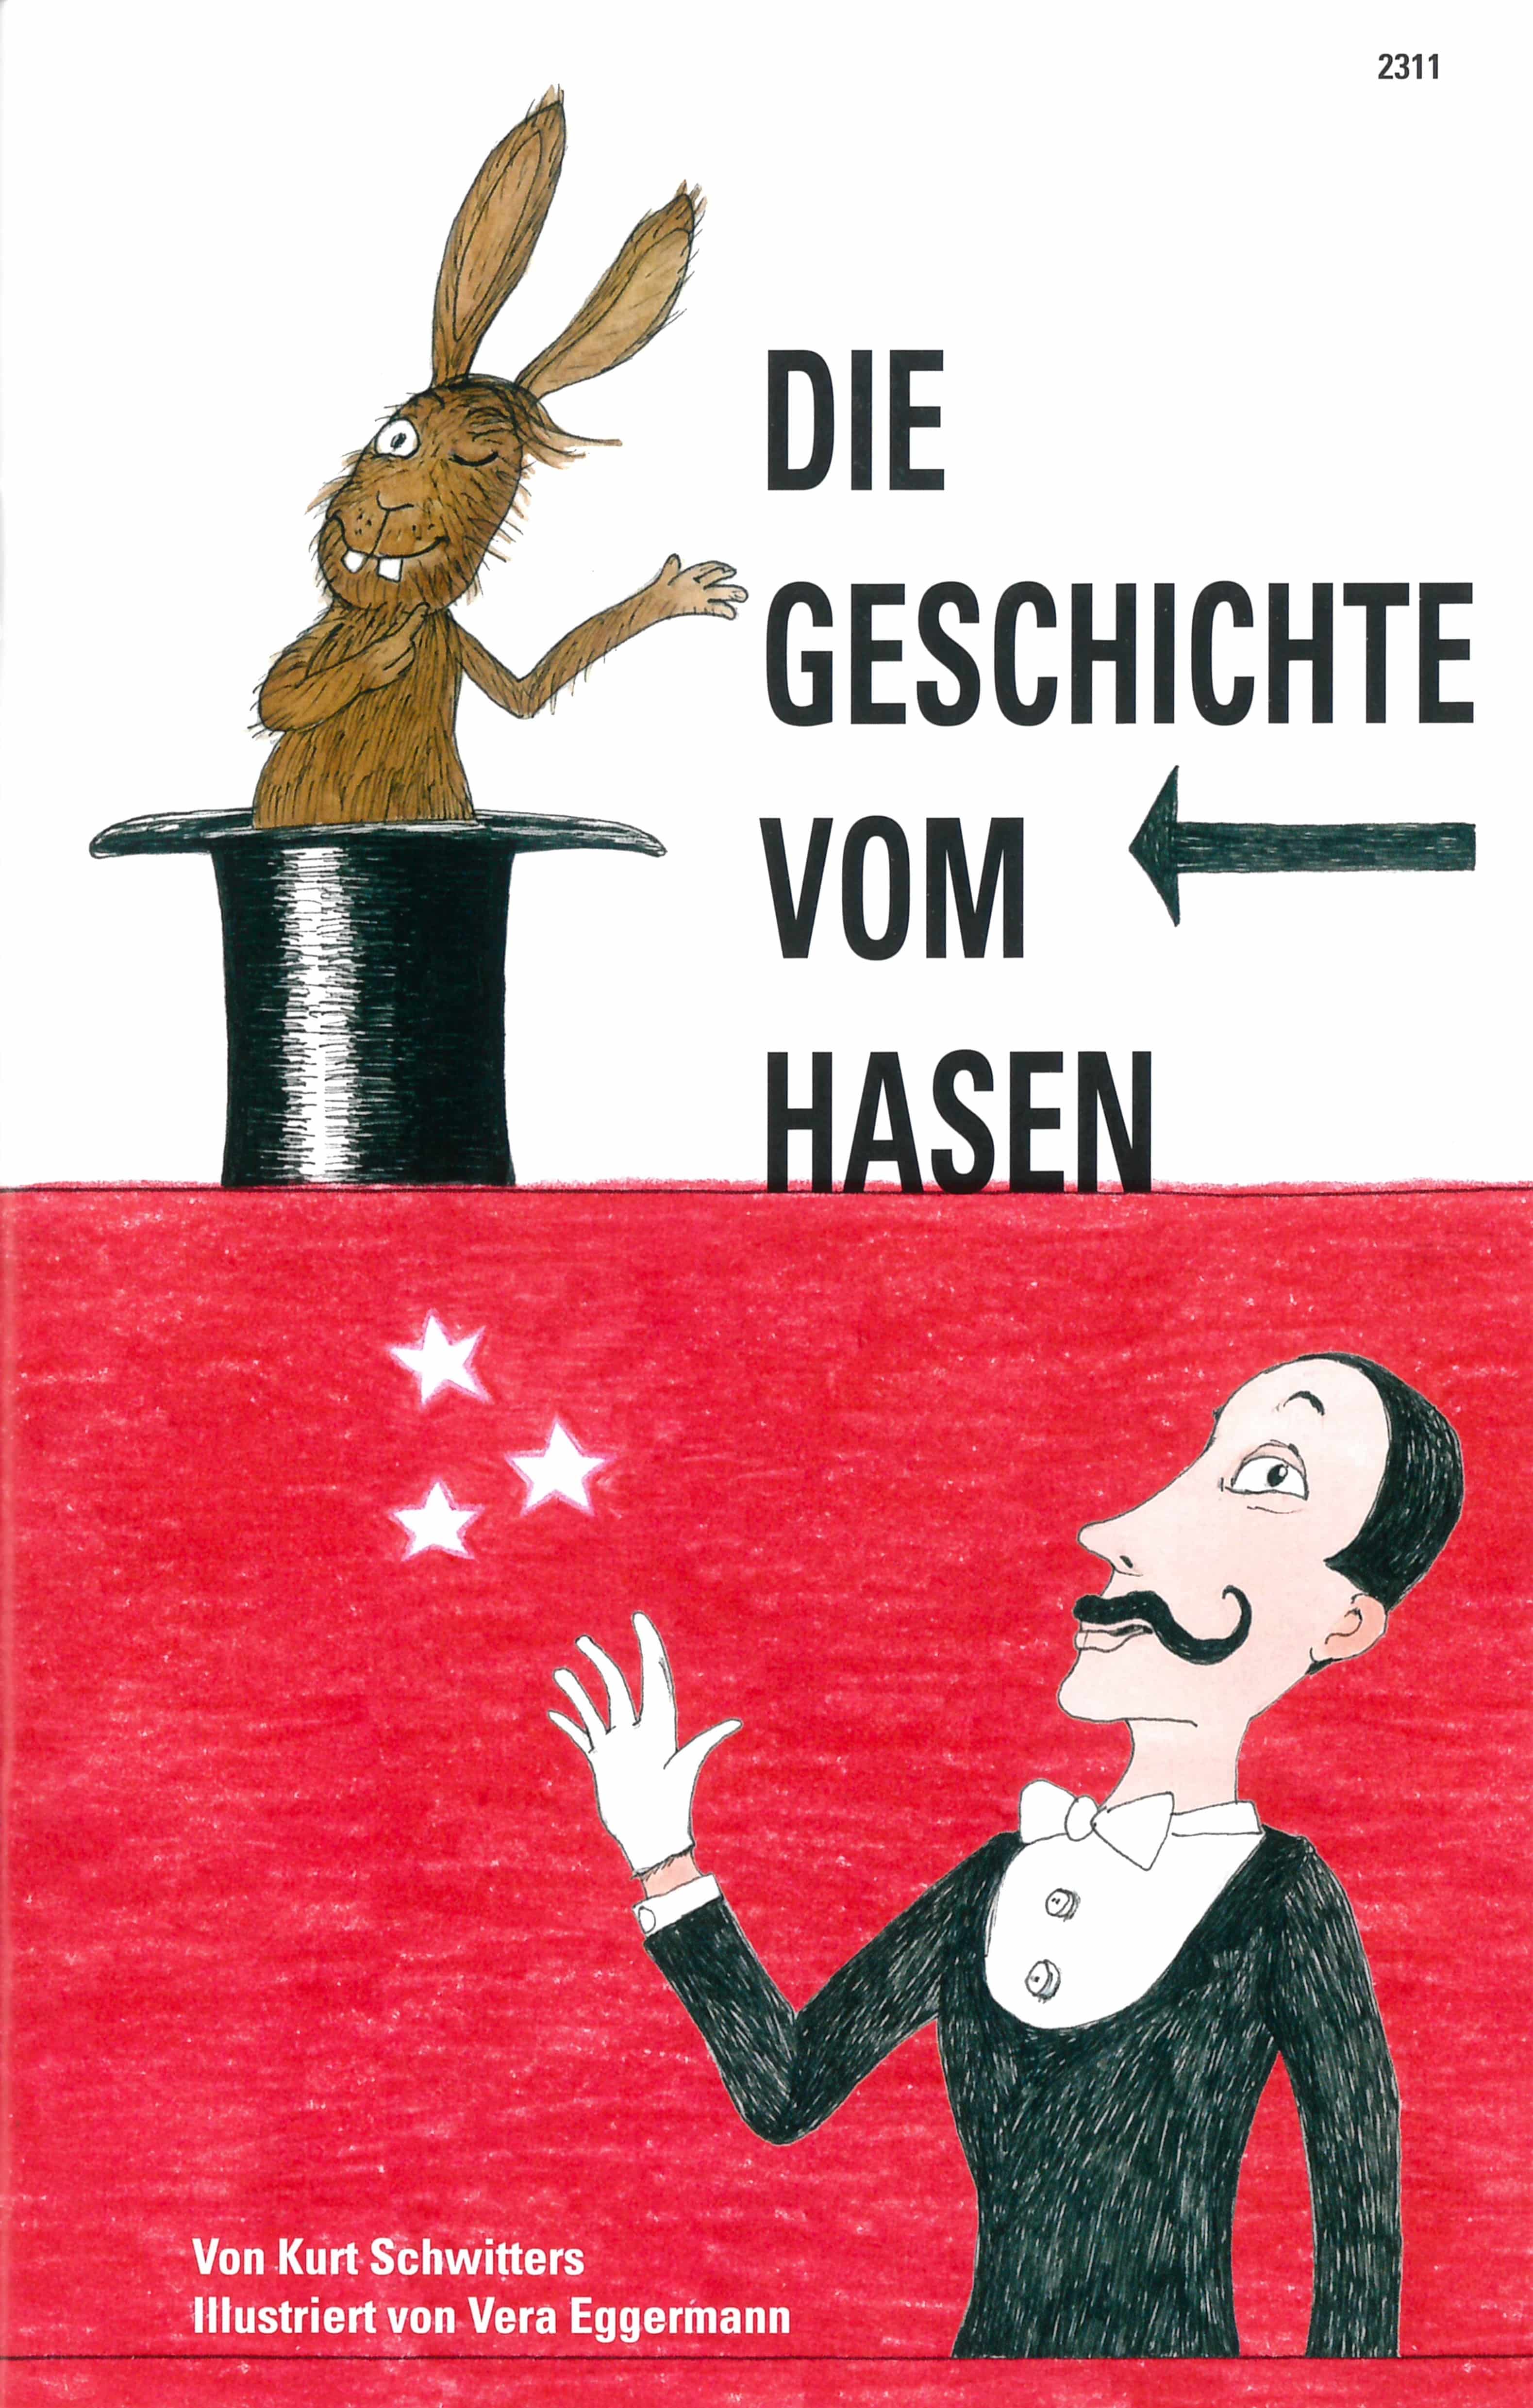 Die Geschichte vom Hasen, ein Kinderbuch von Kurt Schwitters, Illustration von Vera Eggermann, SJW Verlag, Sprachspiele